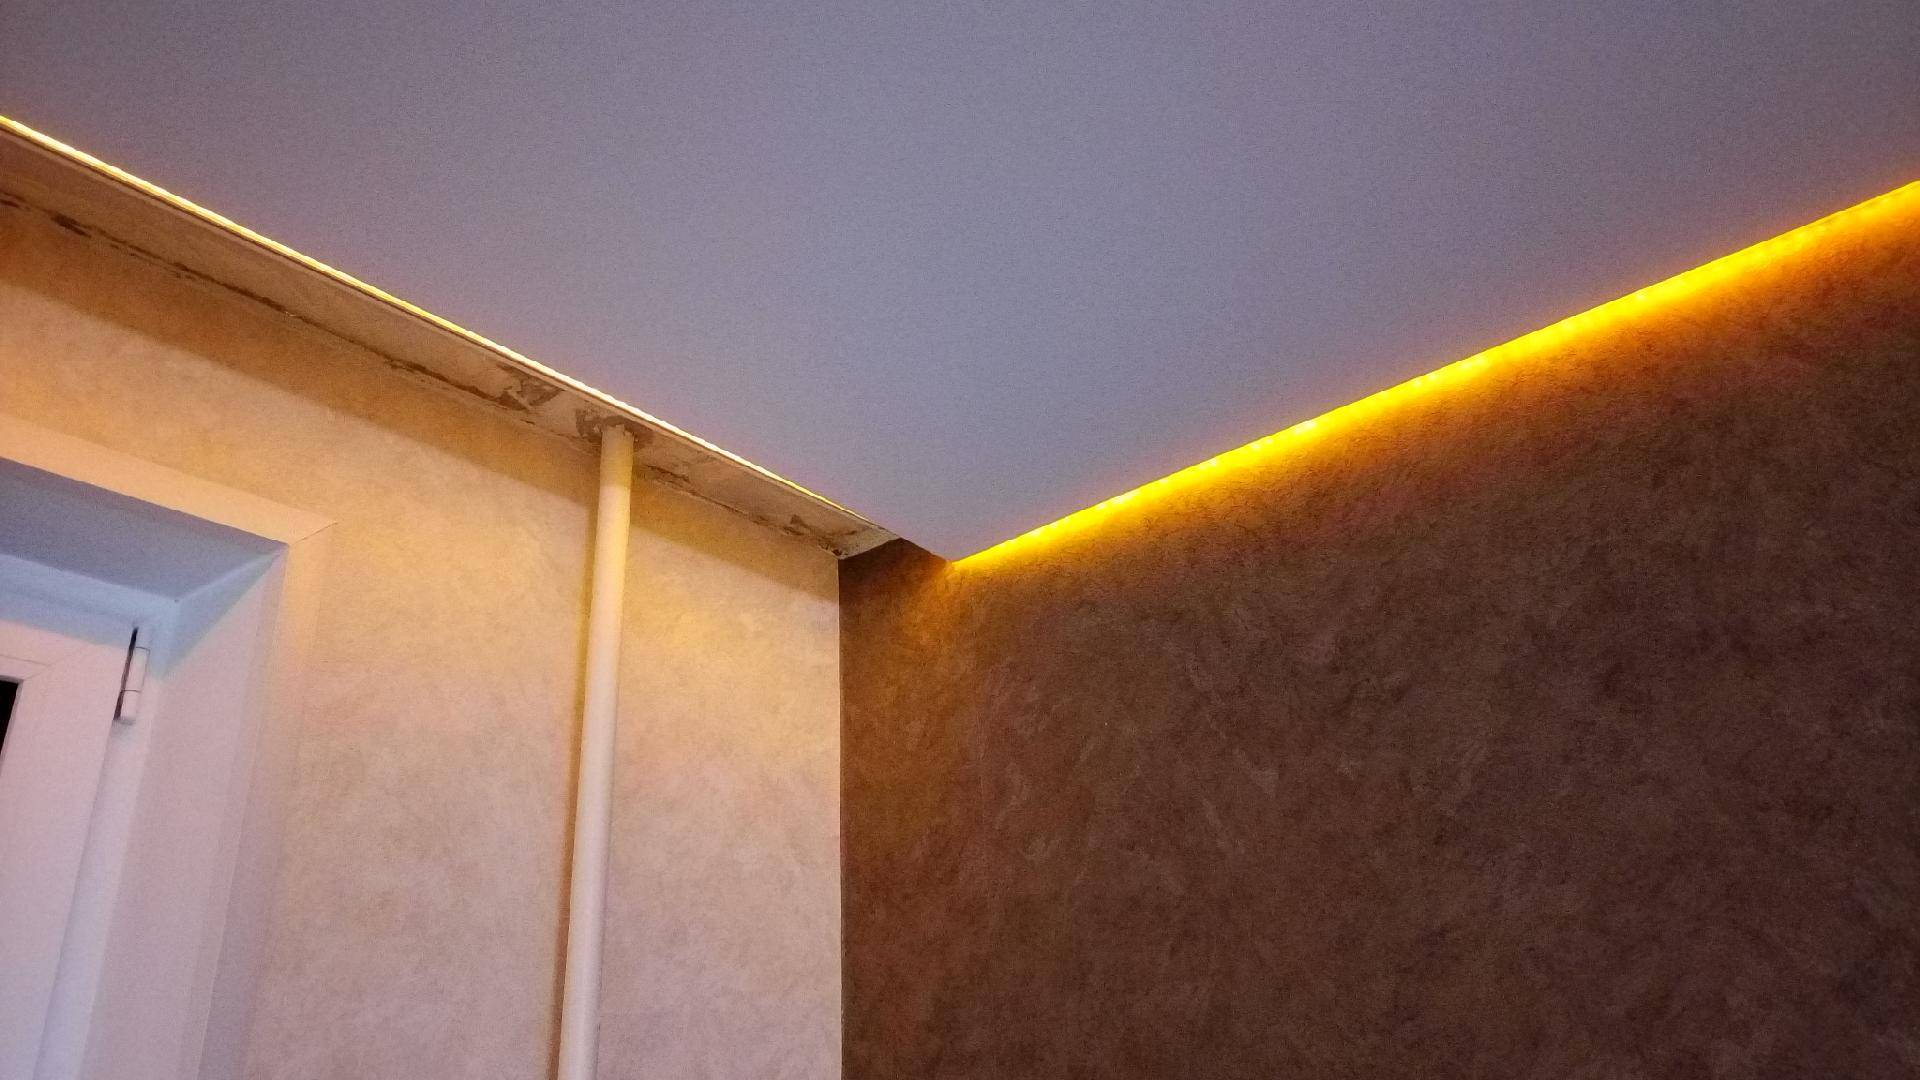 Натяжной потолок с подсветкой по периметру: фото и на сколько опускается при установке